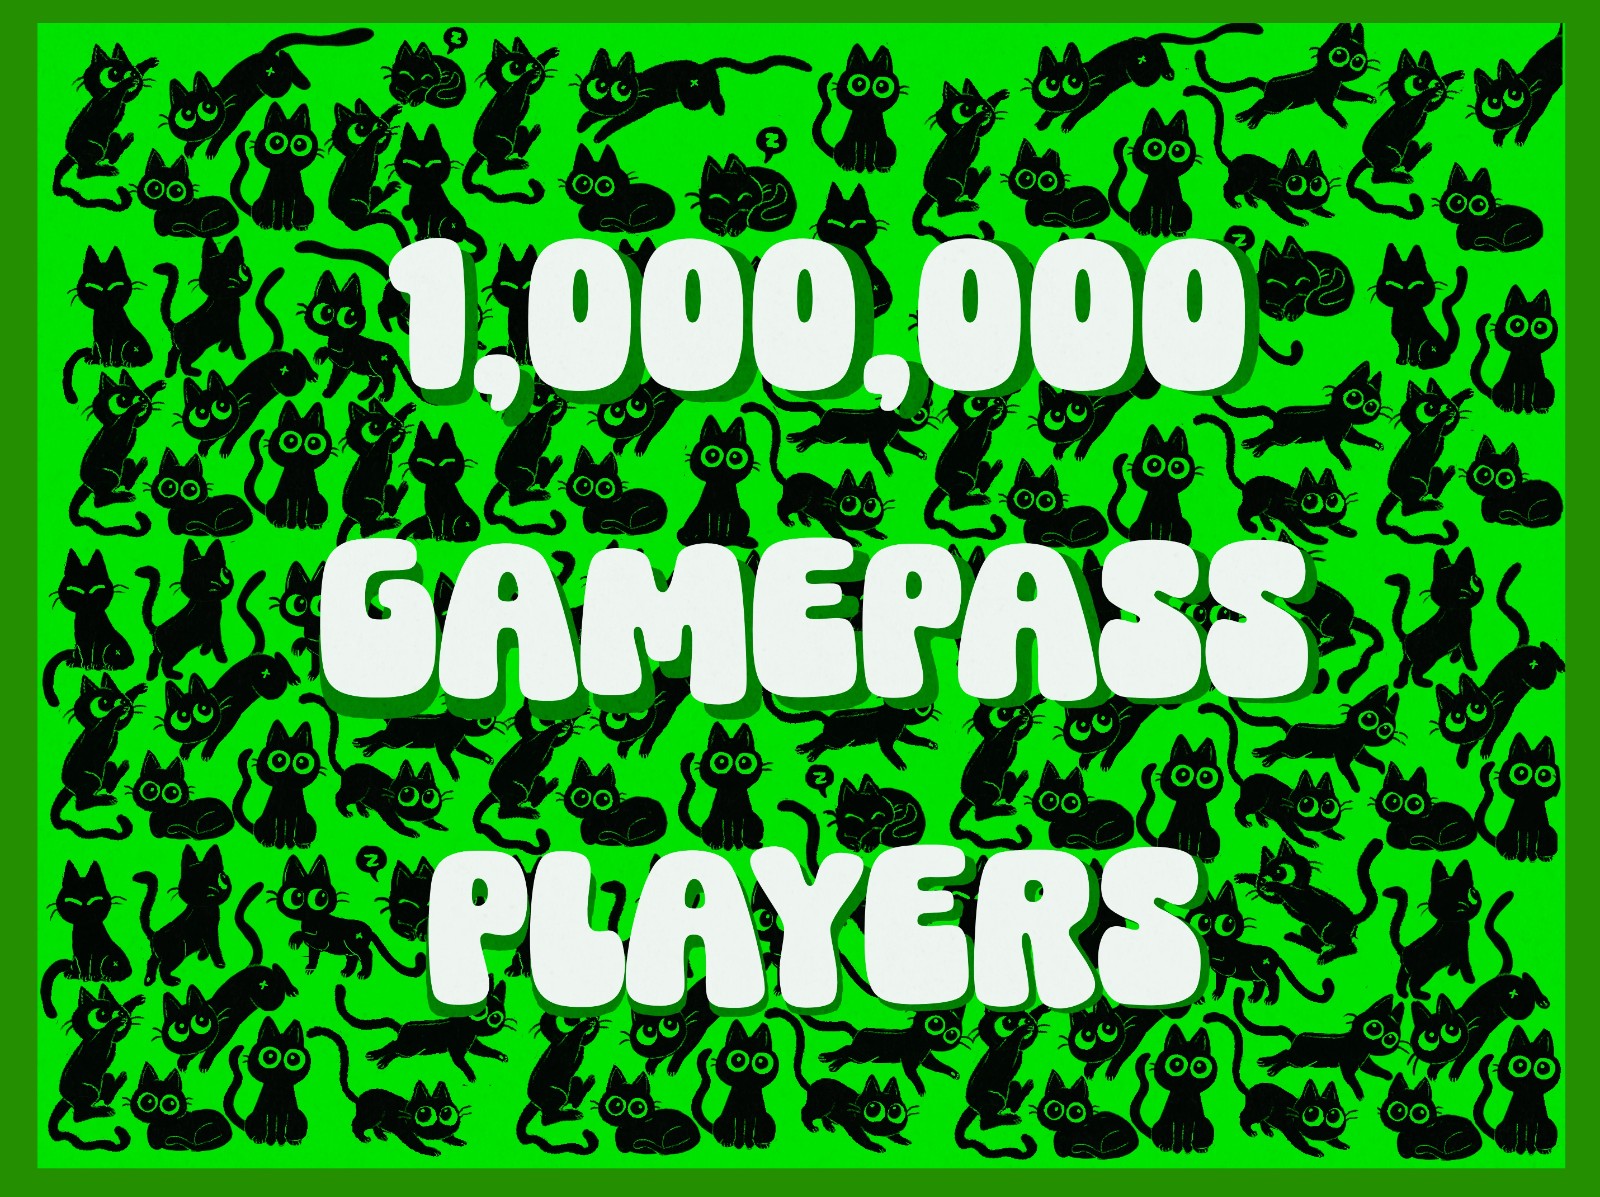 《小猫咪大城市》XGP玩家数突破百万 首周销量破20万